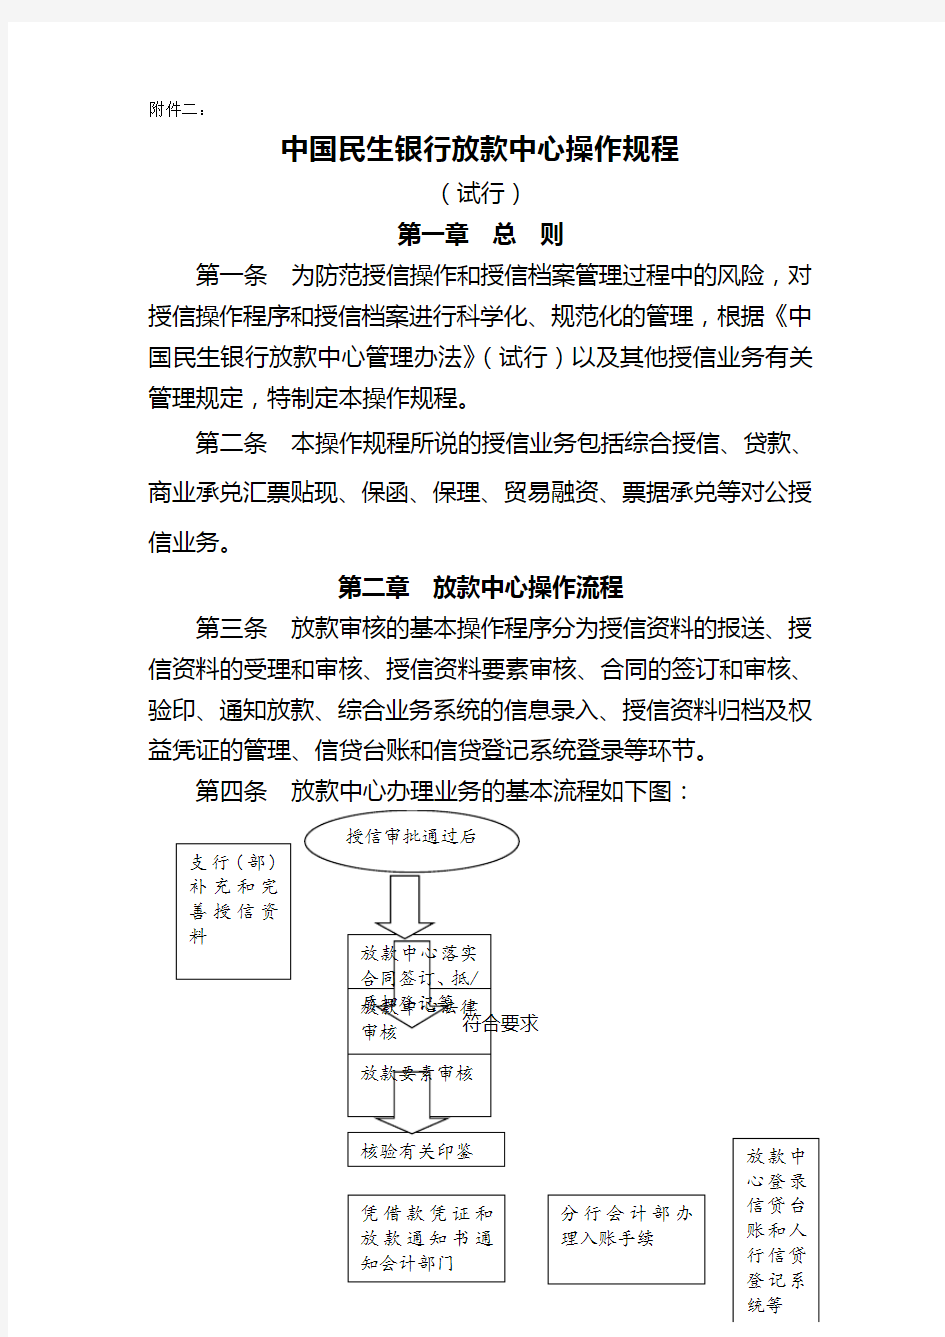 【金融保险类】中国民生银行放款中心操作规程